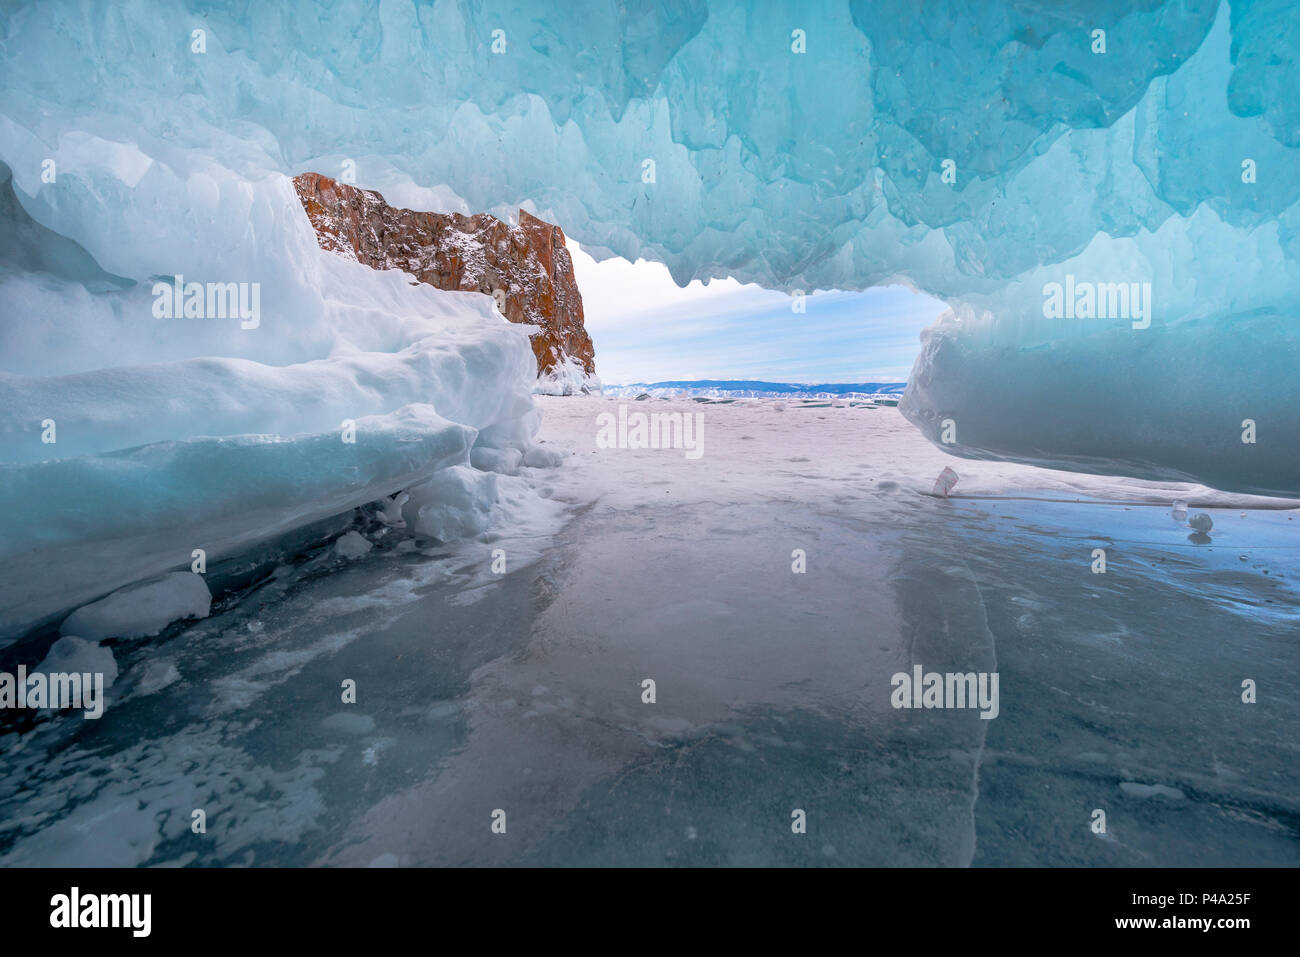 All'interno della caverna di ghiaccio al lago Baikal, Regione di Irkutsk, Siberia, Russia Foto Stock